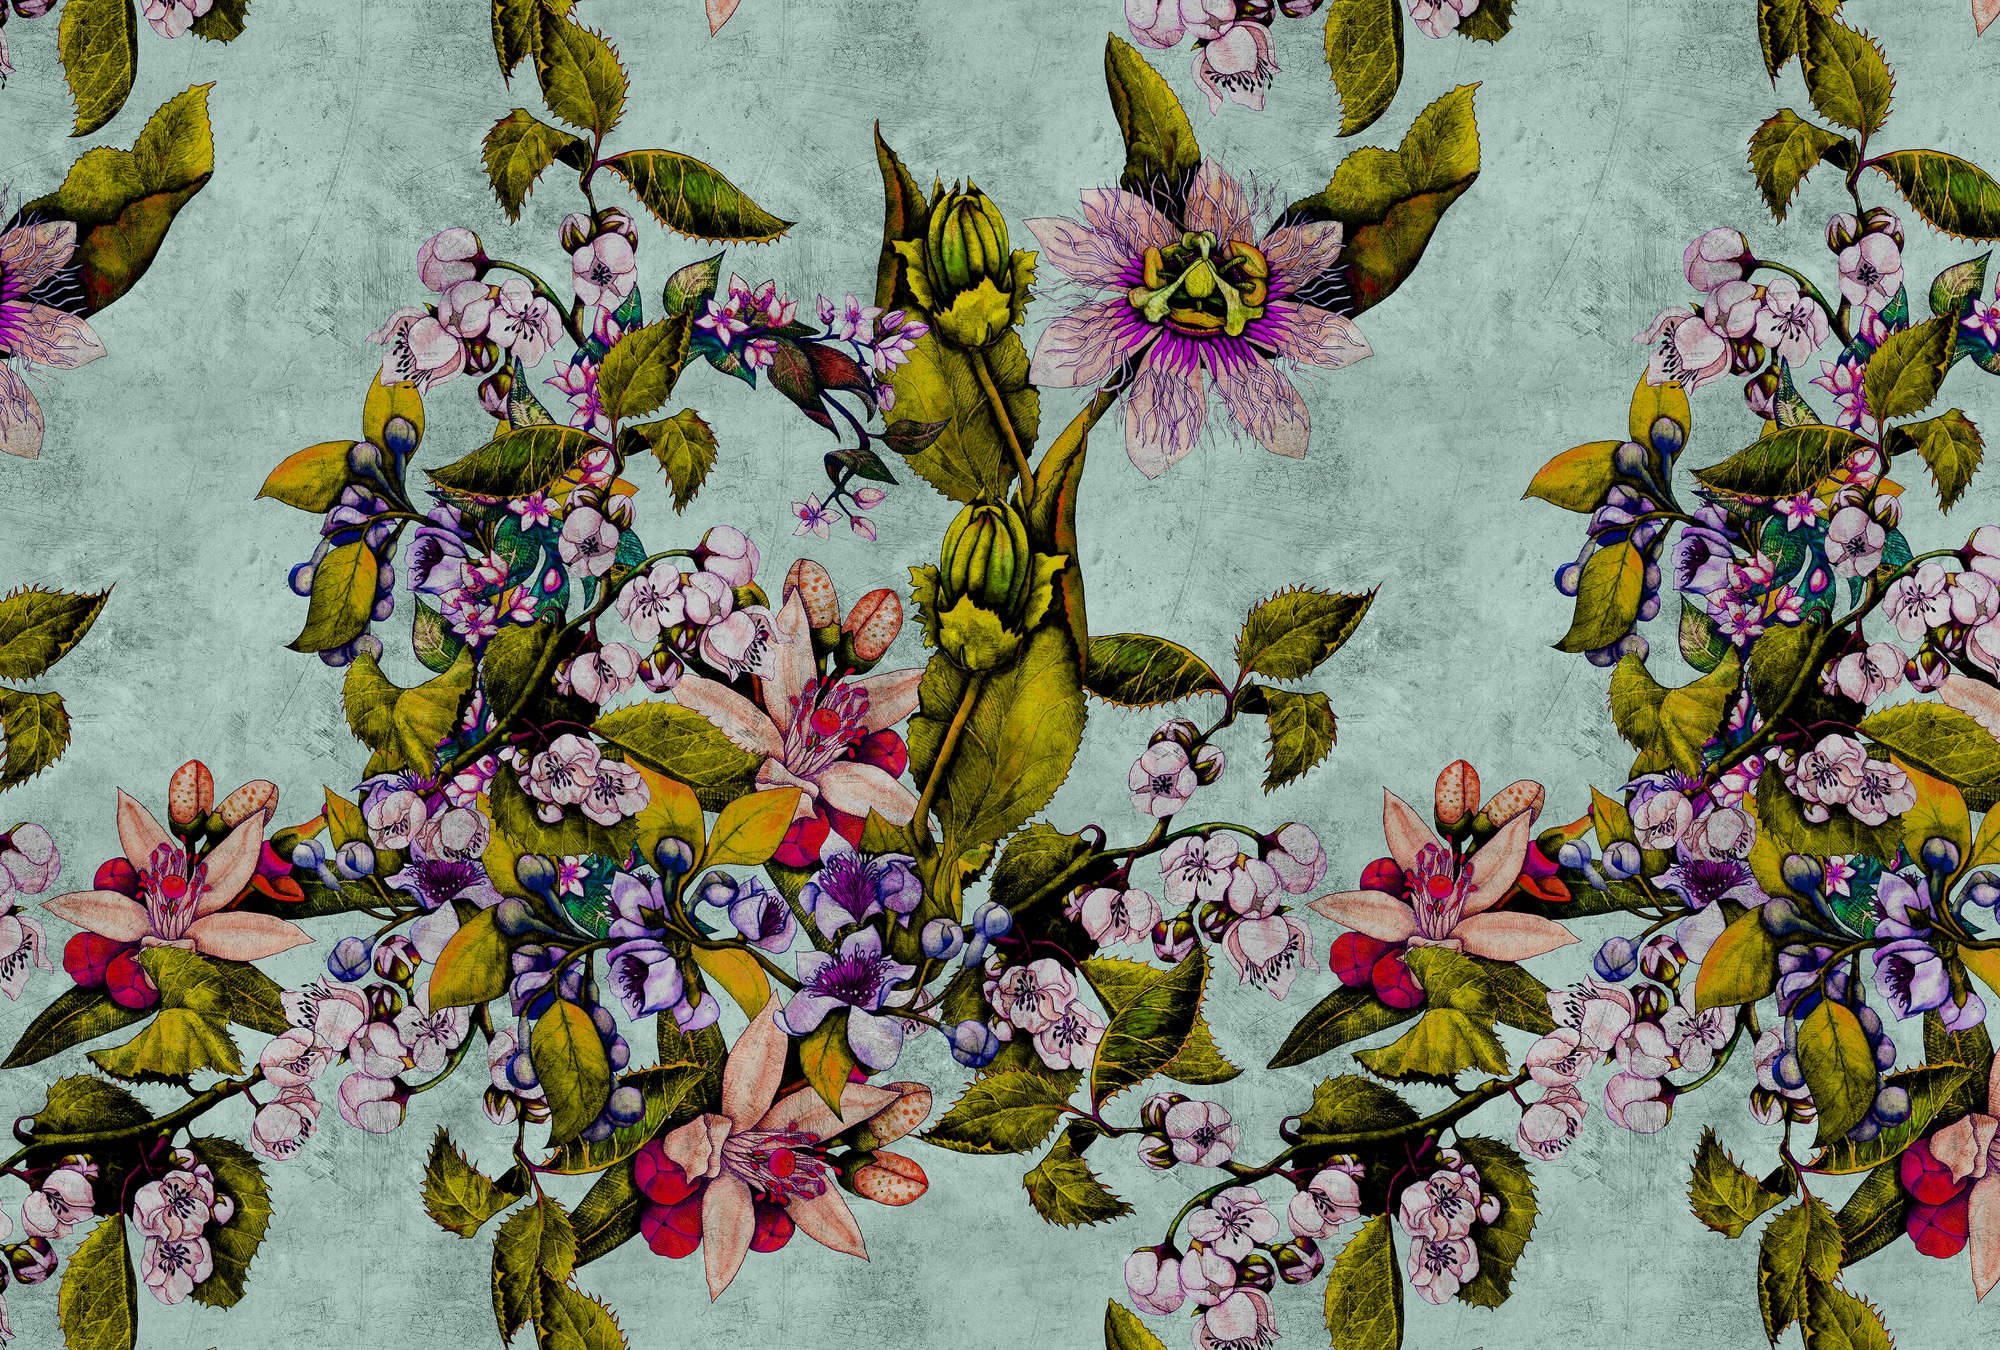             Tropical Passion 2 - Fototapete in kratzer Struktur mit Blüten und Knospen – Grün | Mattes Glattvlies
        